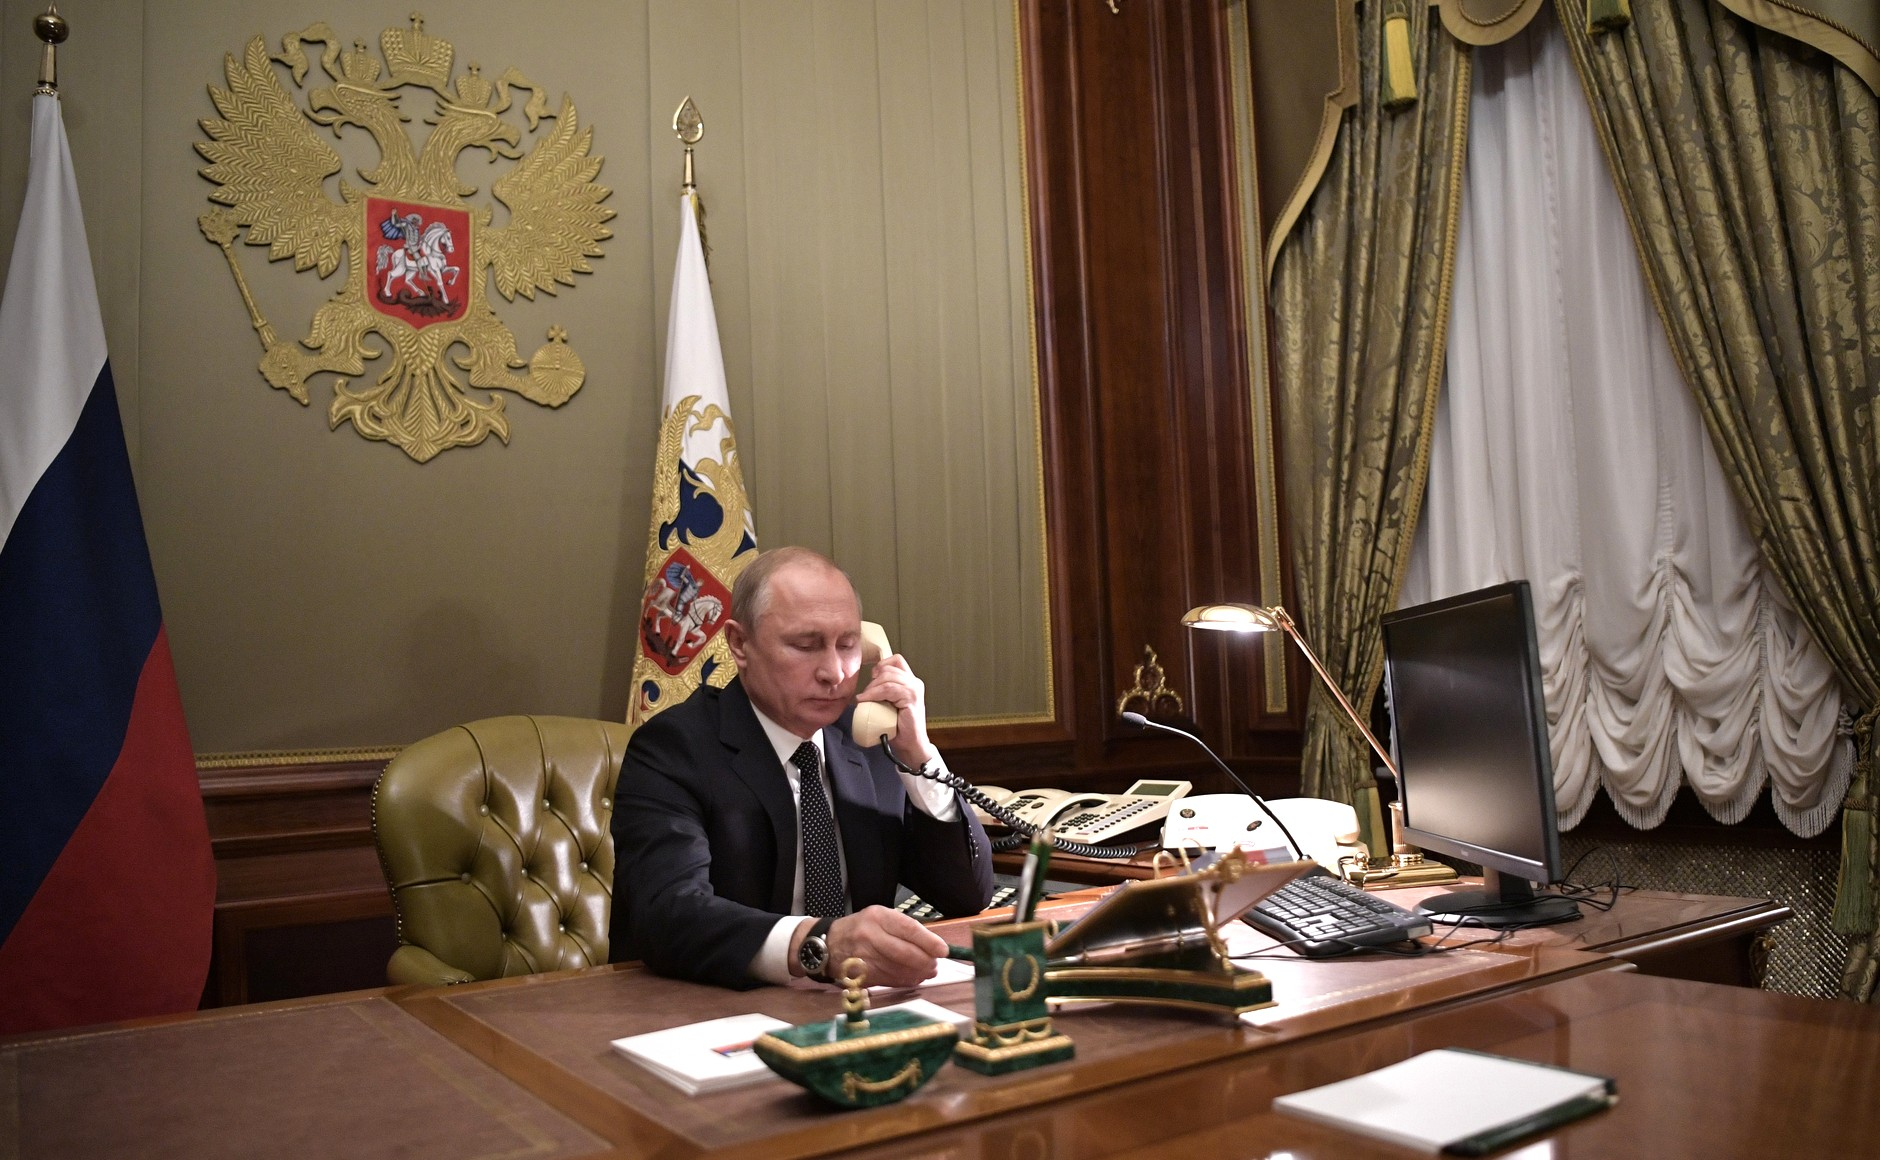 Путин показал свой секретный кабинет в Кремле - ВИДЕО